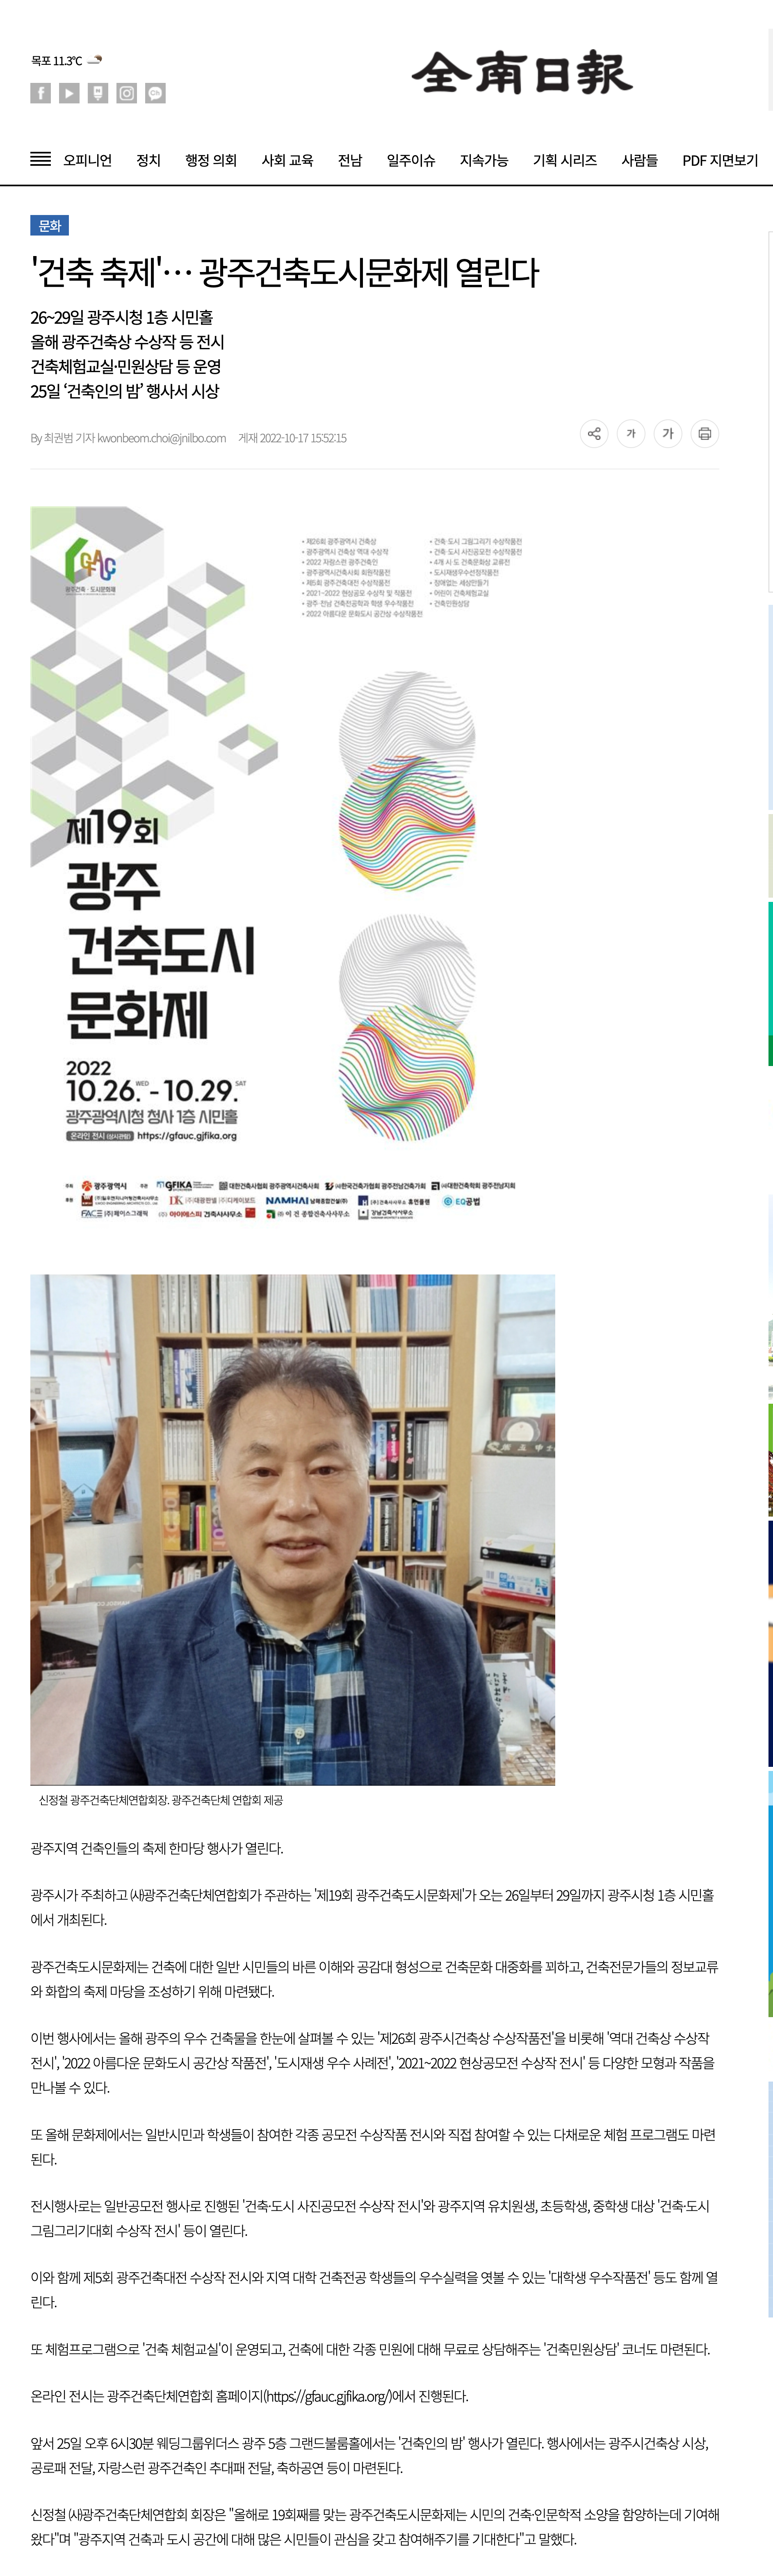 [전남일보] 광주 동구 '학운동 공동주택 네트워크' 정례회의 개최